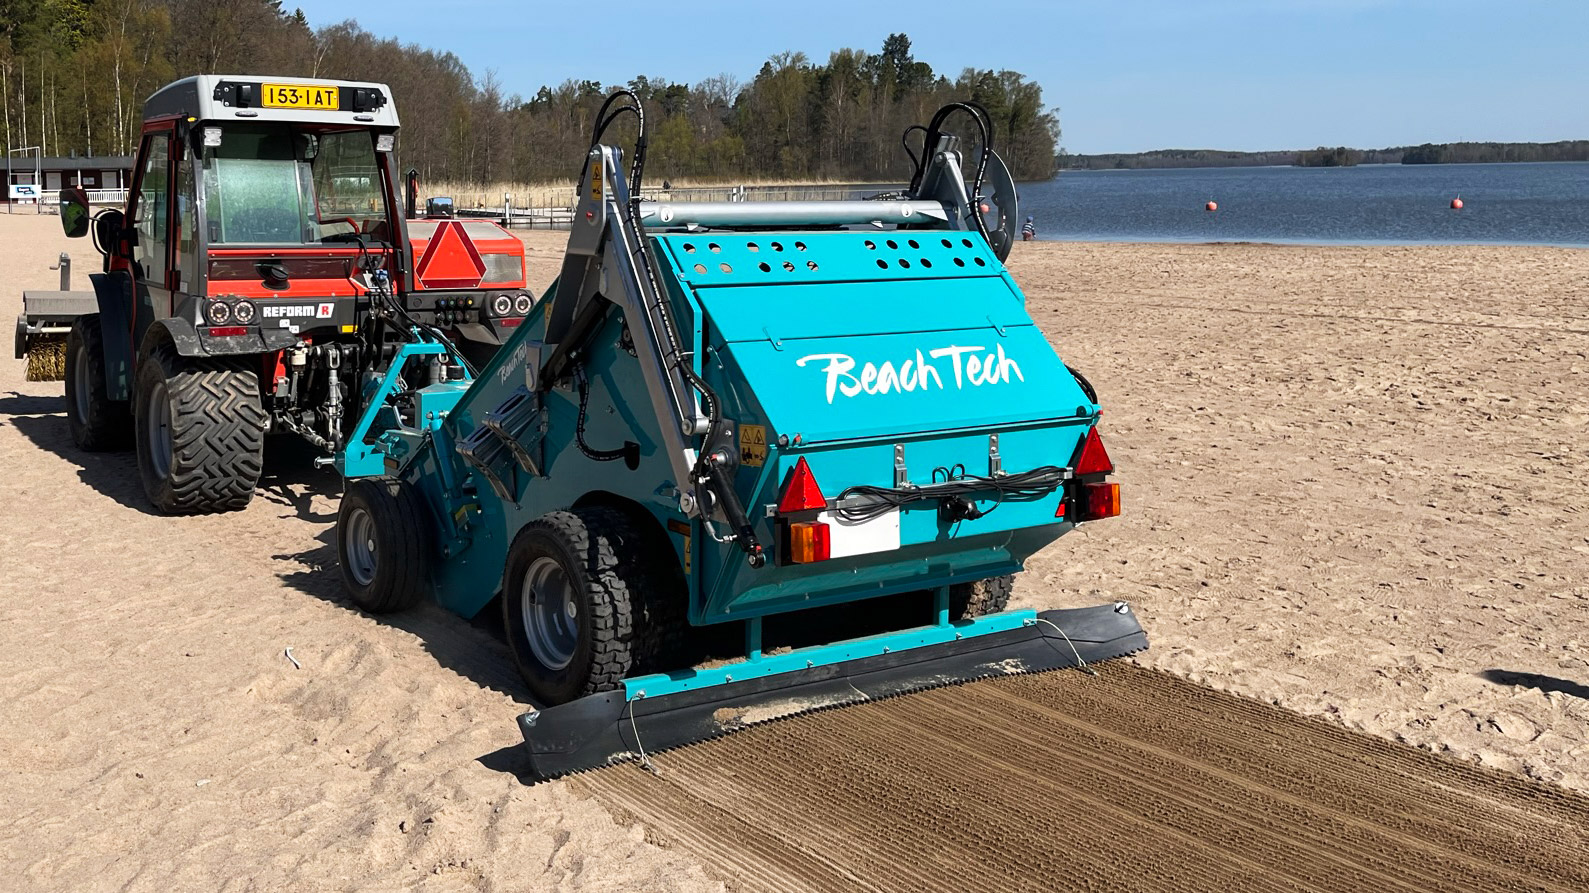 Kessu Oy toimitti BeachTech 1000 rantojenhoitokoneen Espoon kaupungille